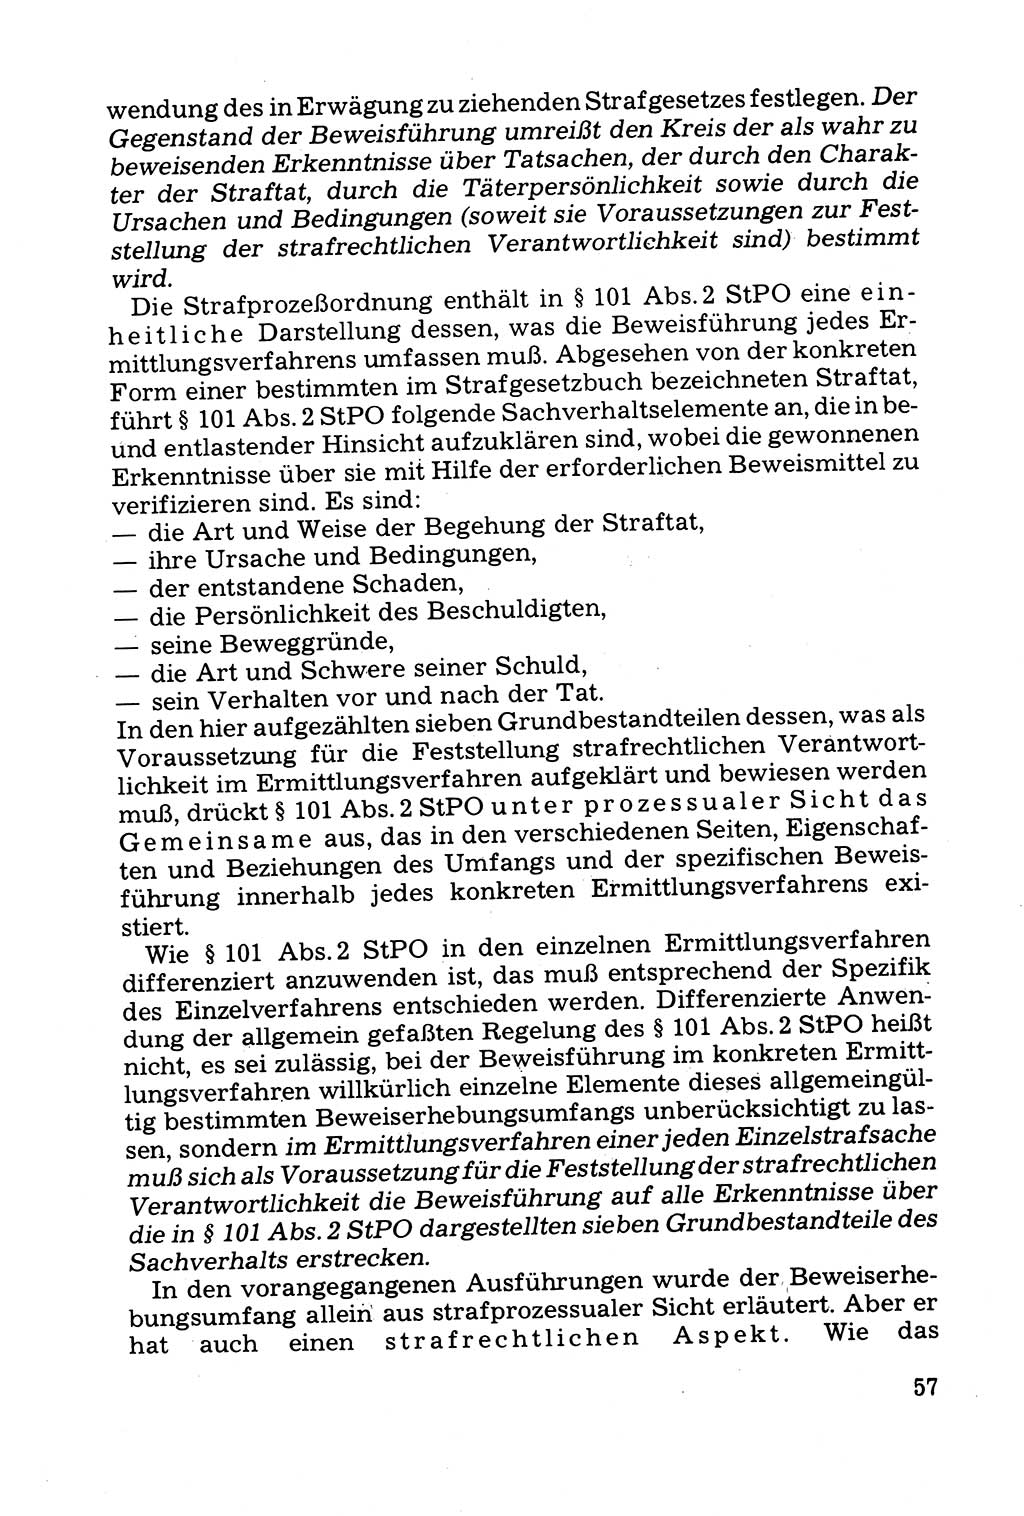 Grundfragen der Beweisführung im Ermittlungsverfahren [Deutsche Demokratische Republik (DDR)] 1980, Seite 57 (Bws.-Fhrg. EV DDR 1980, S. 57)